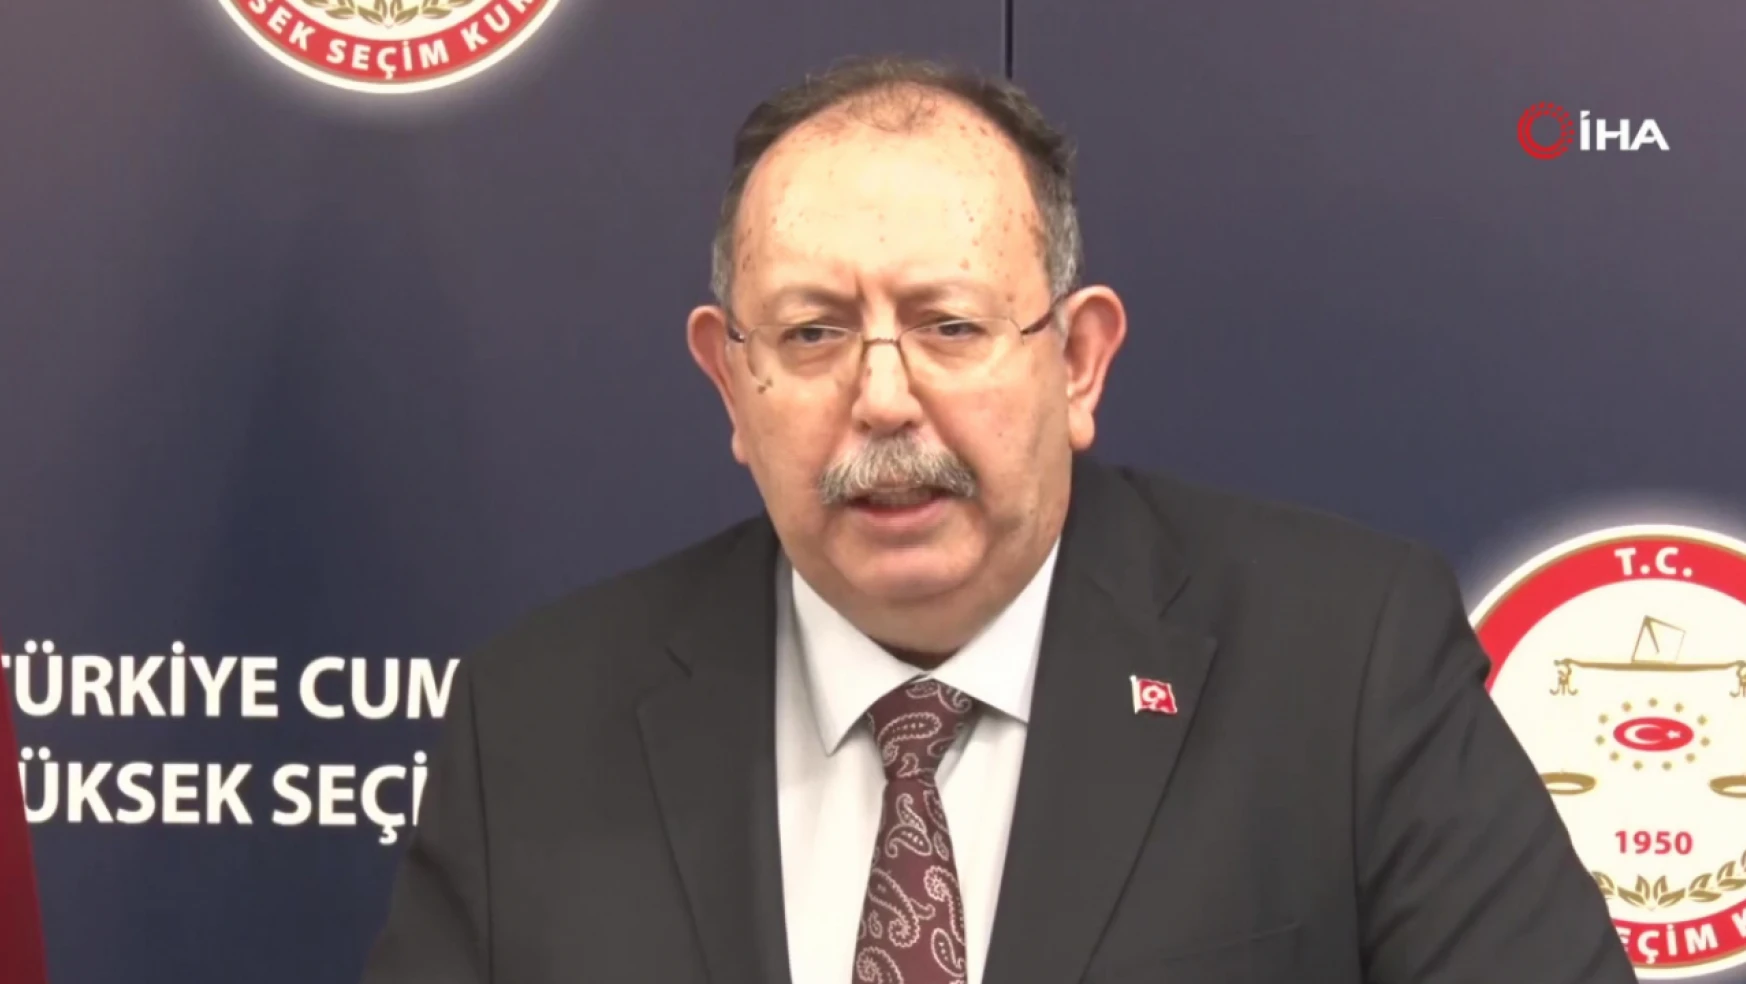 YSK Başkanı Yener: YSK seçimlerin güvenli bir ortamda gerçekleşmesi için tüm tedbirlerini almıştır